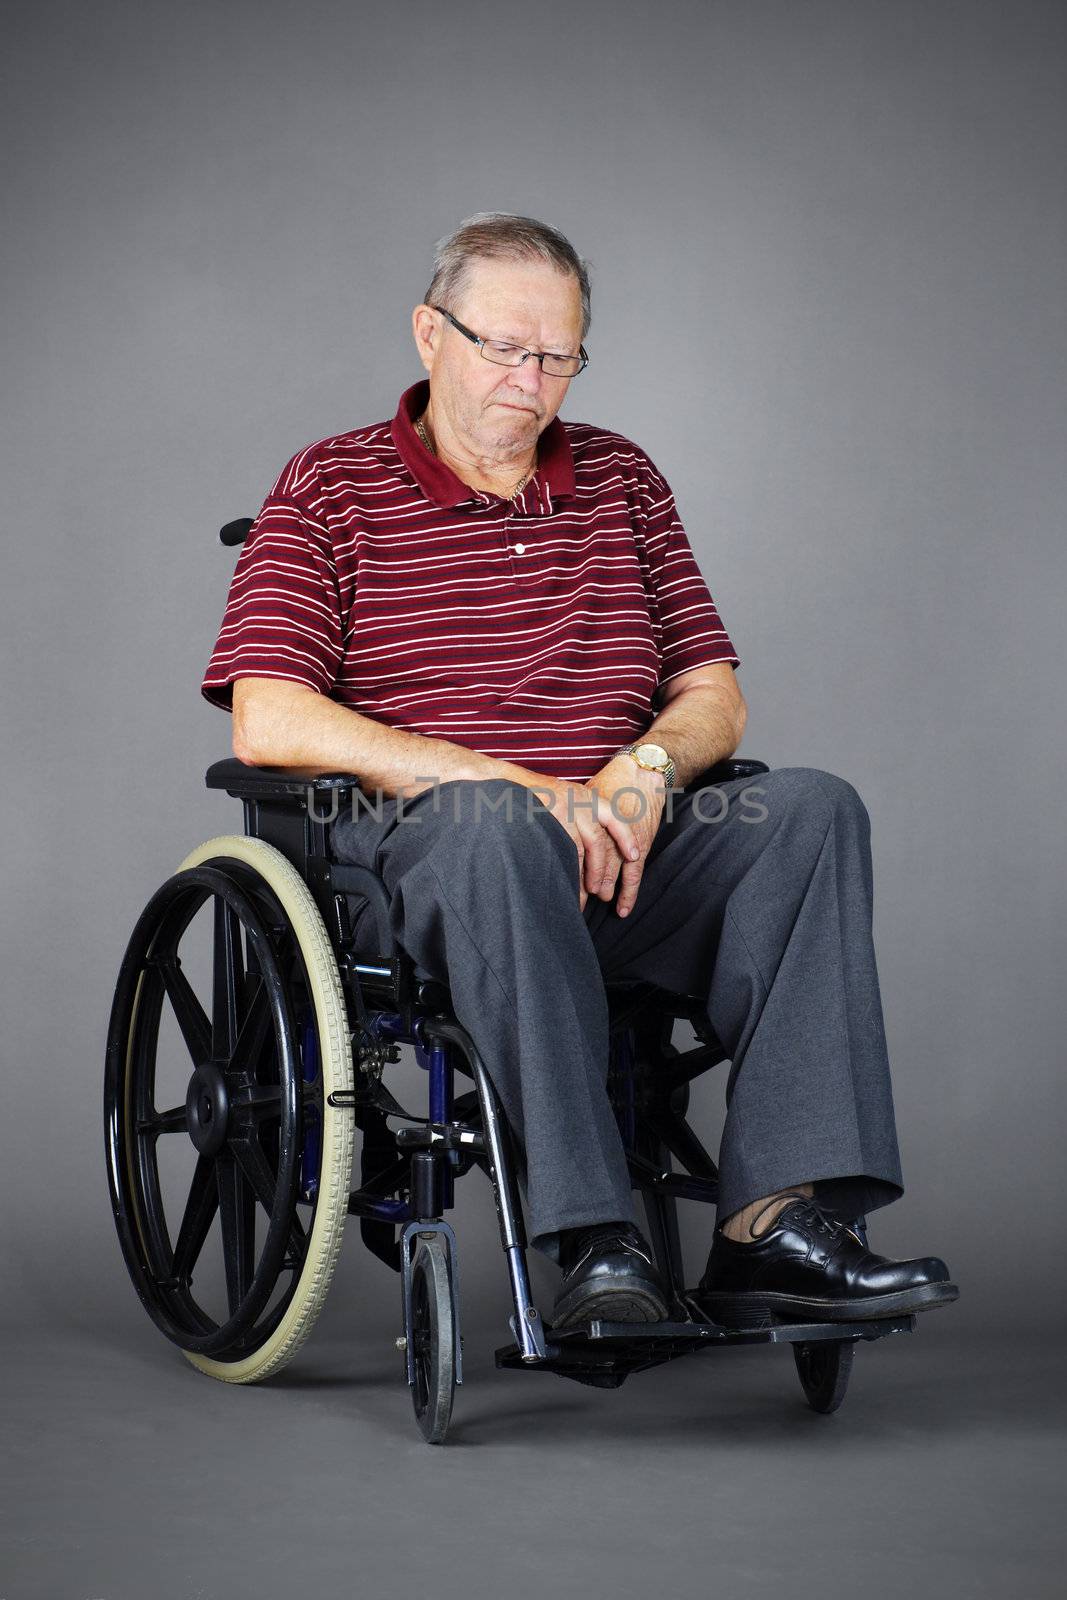 Sad senior man in wheelchair by Mirage3